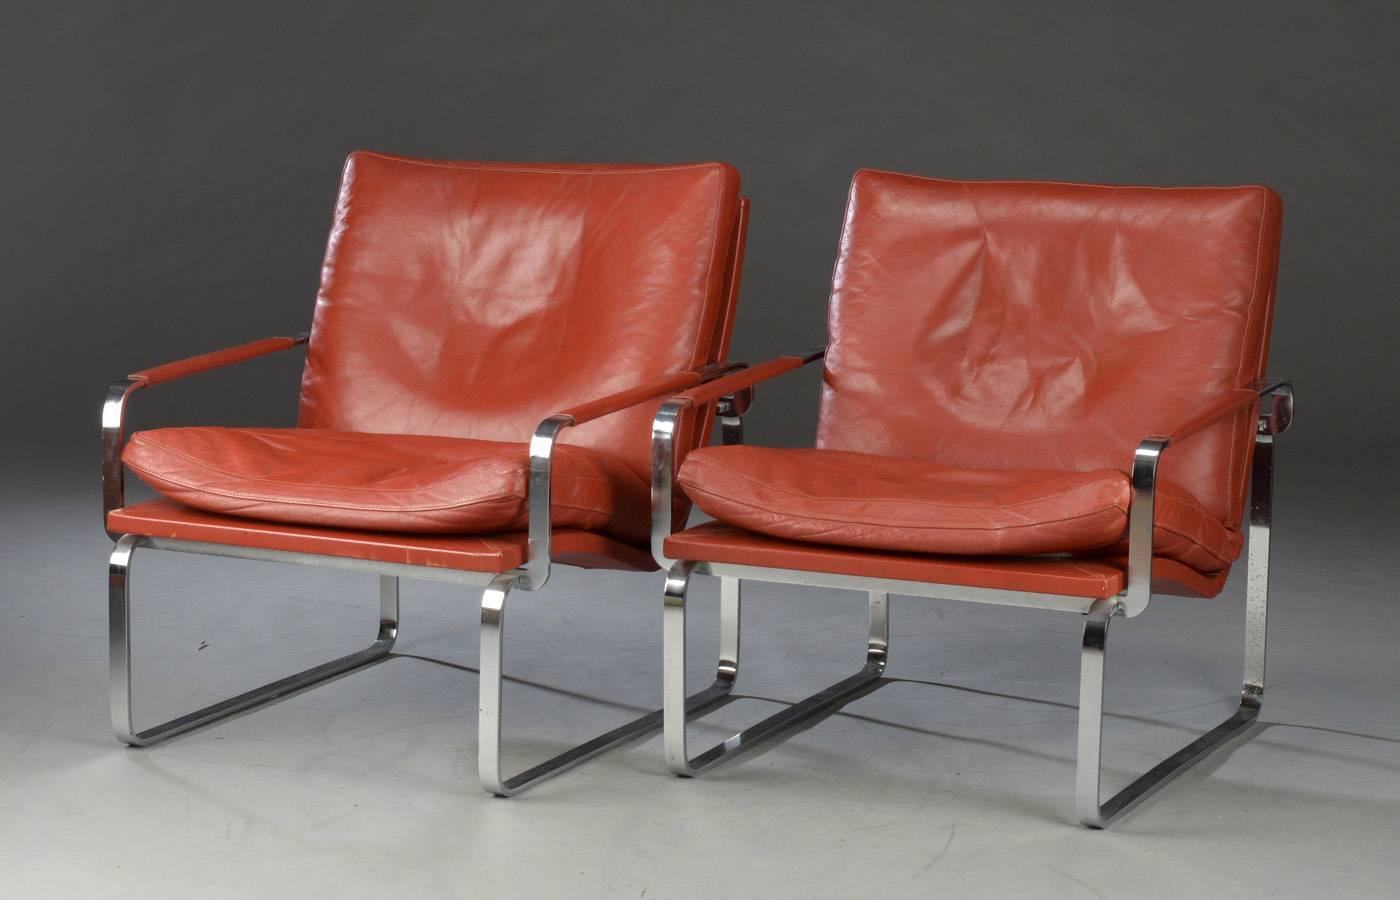 Pair of Danish Lounge Chairs by Jørgen Lund & Ole Larsen for Bo-Ex (Skandinavische Moderne)